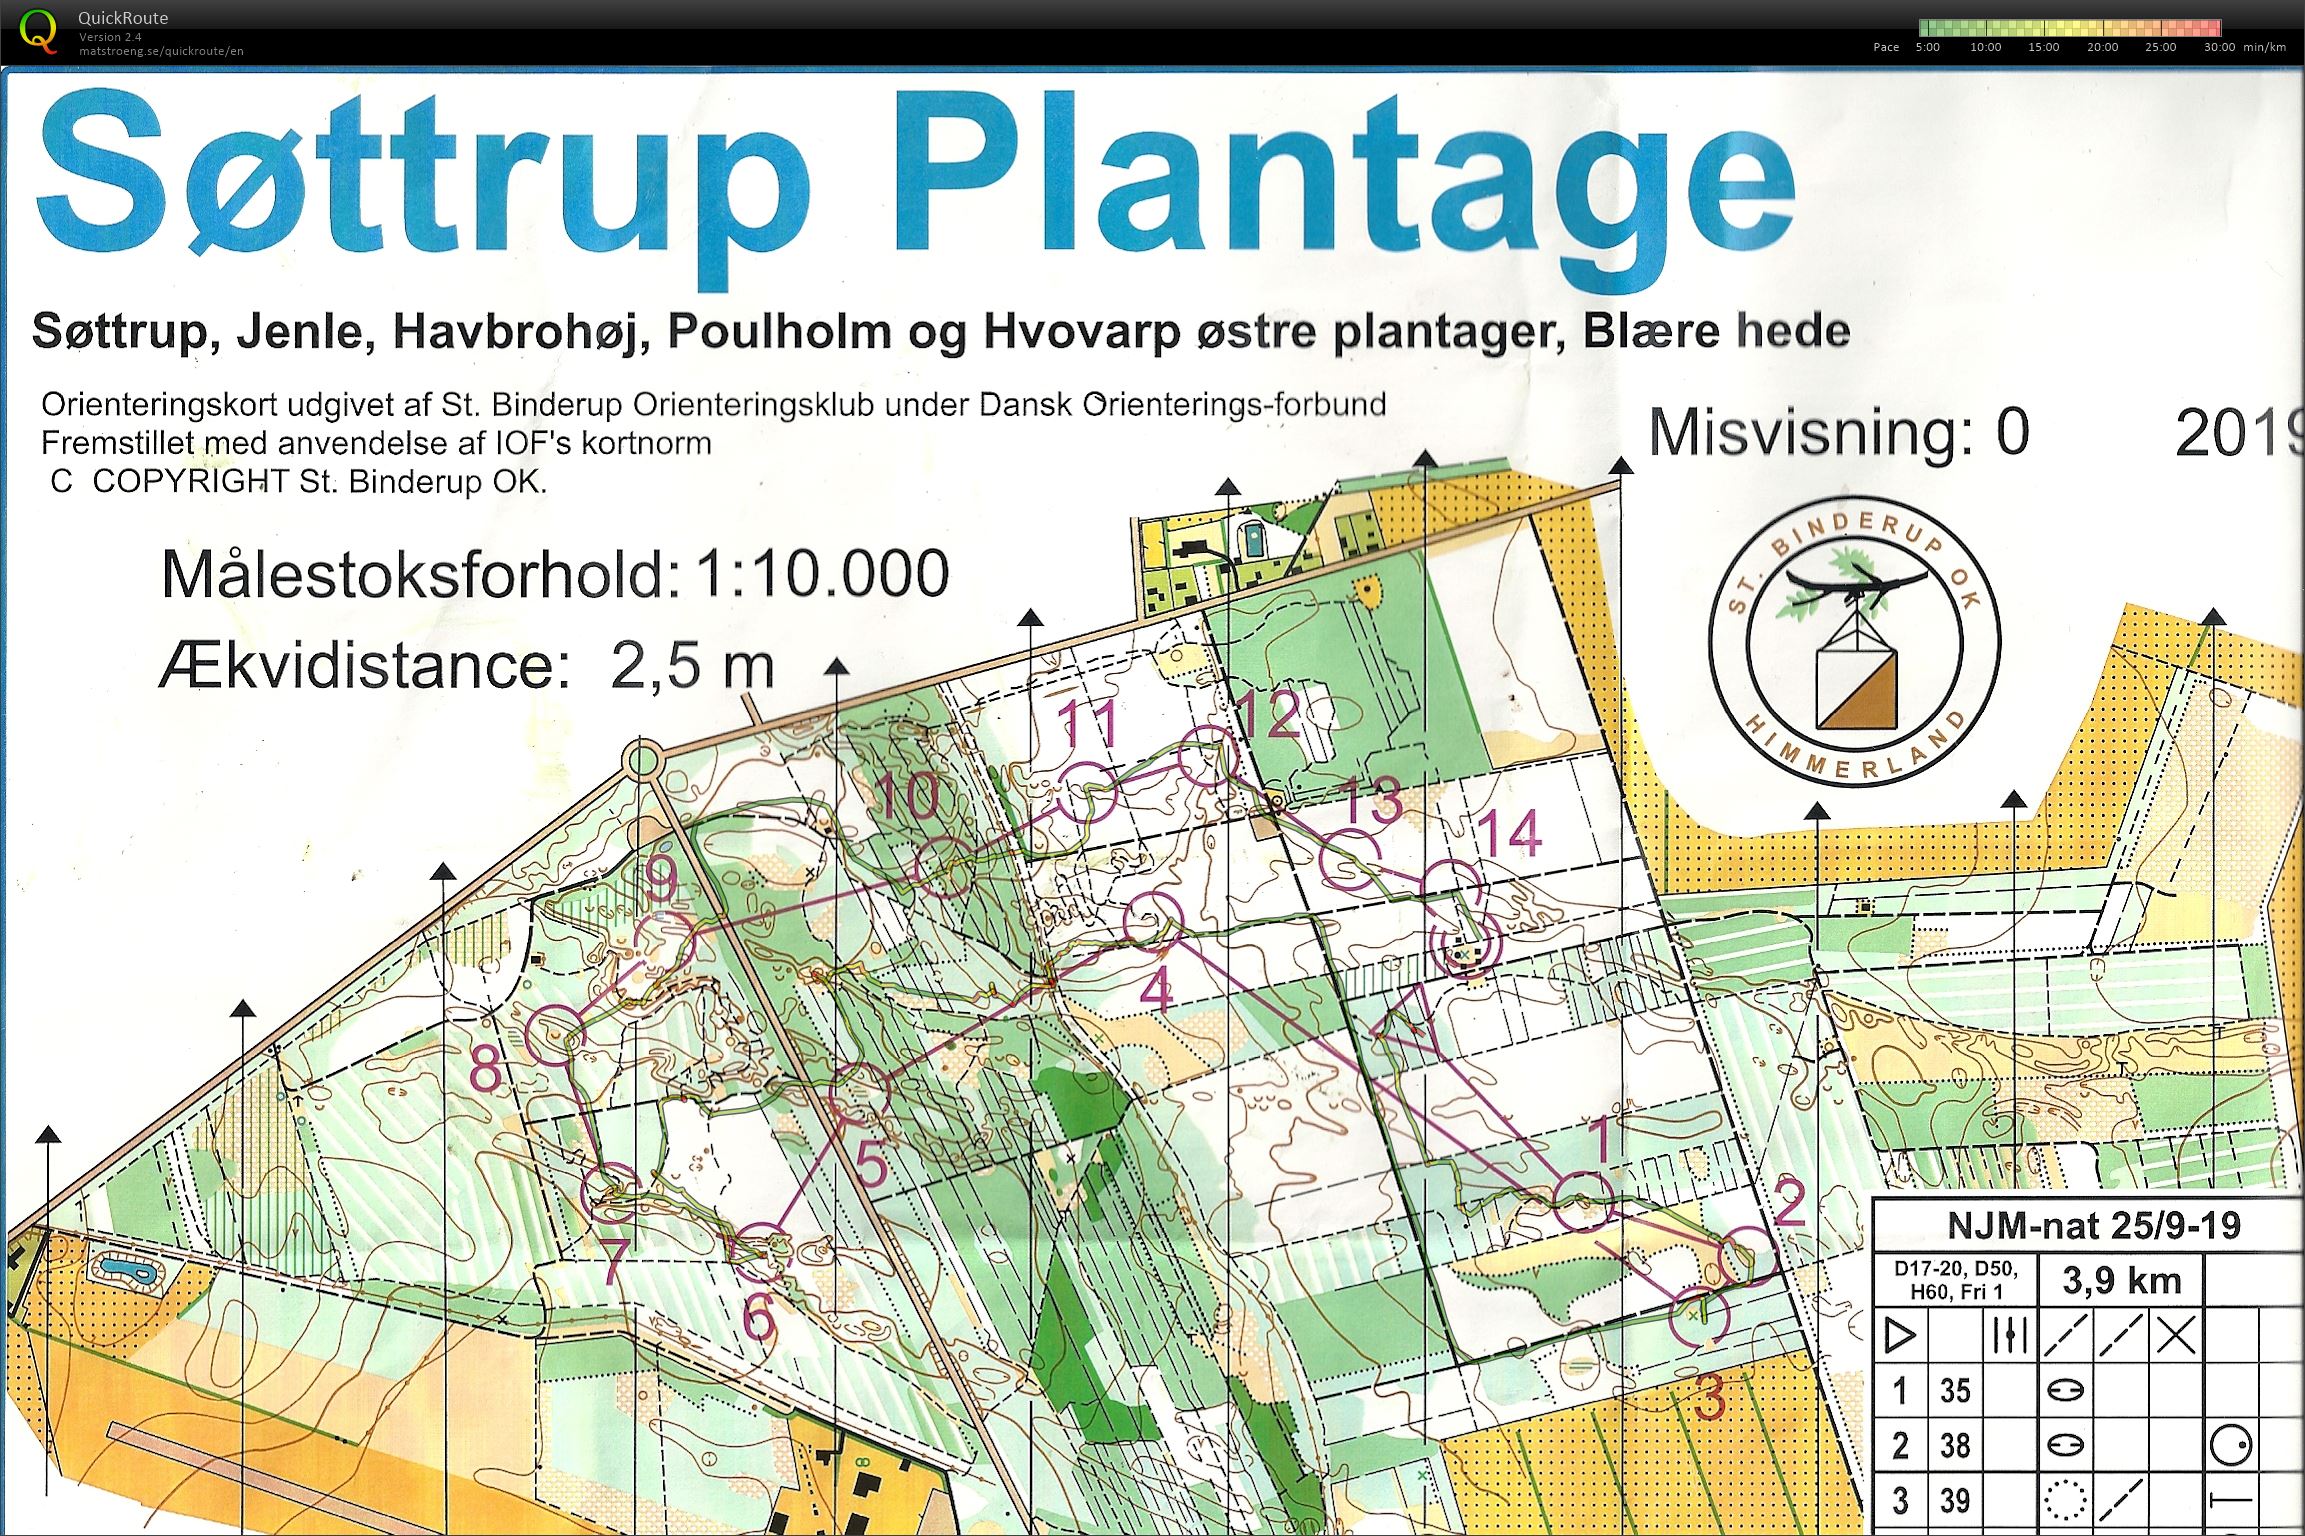 Søttrup Plantage, NJM Nat. Bane D50. (25-09-2019)